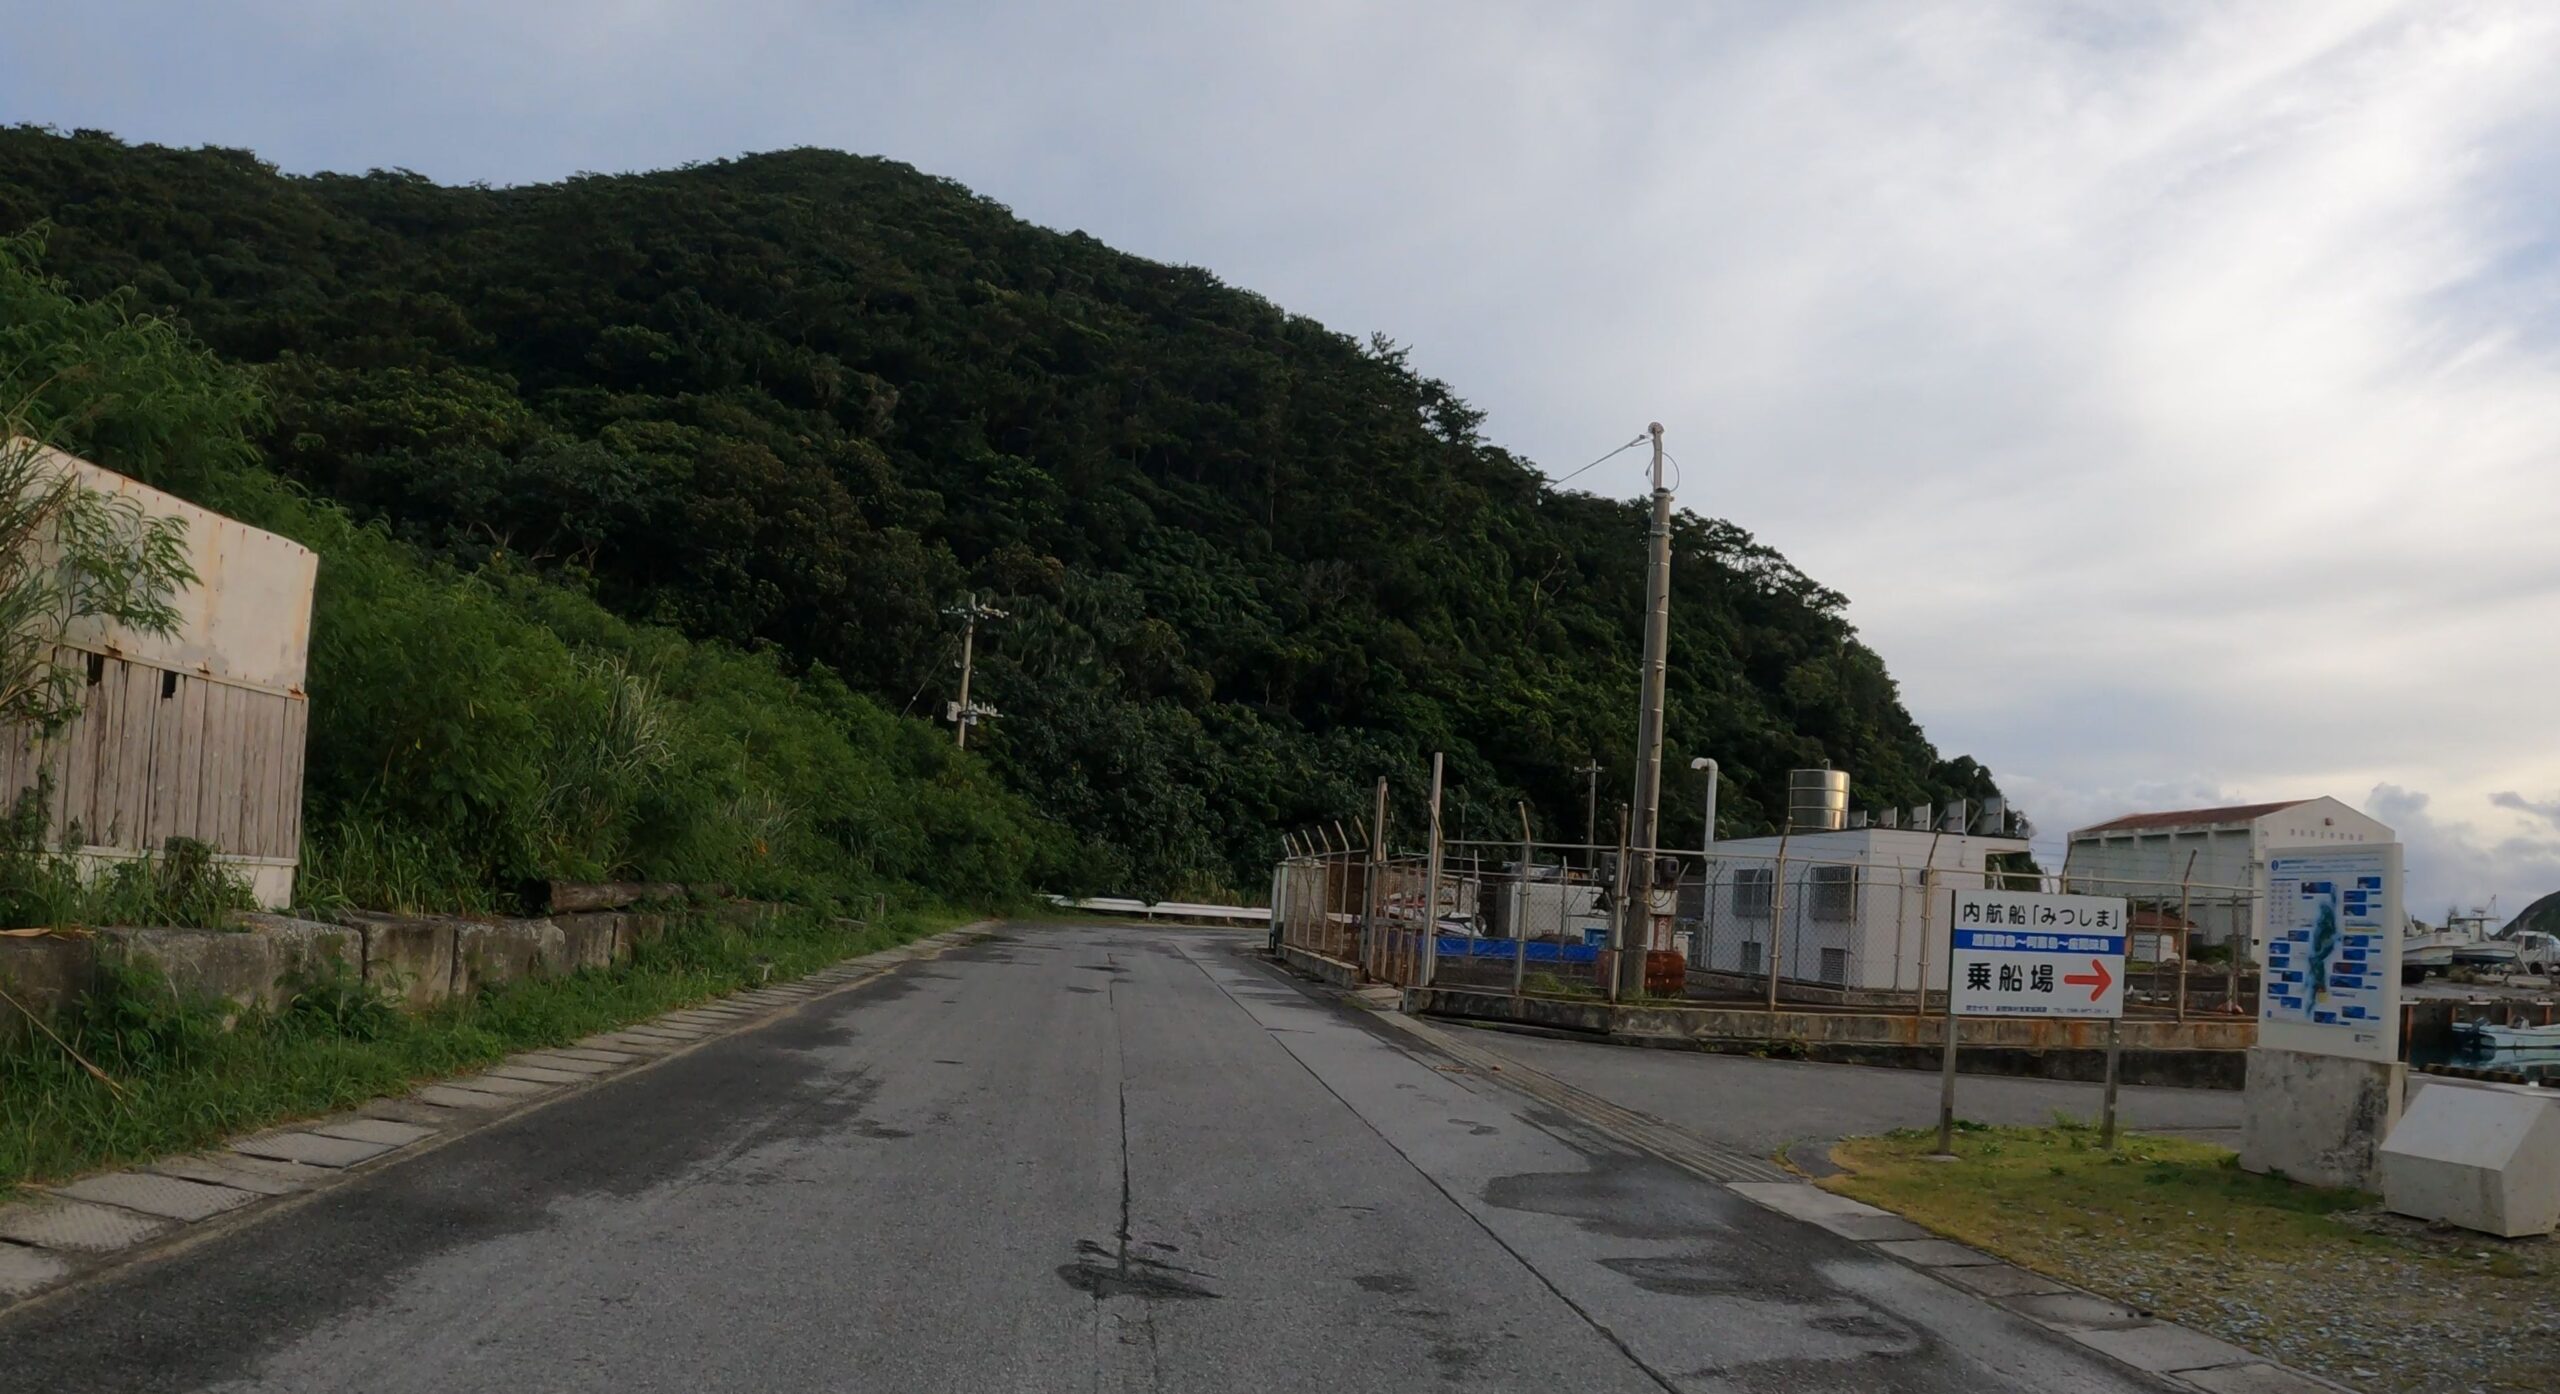 渡嘉敷島の阿波連港にある村内航路「みつしま」の乗場